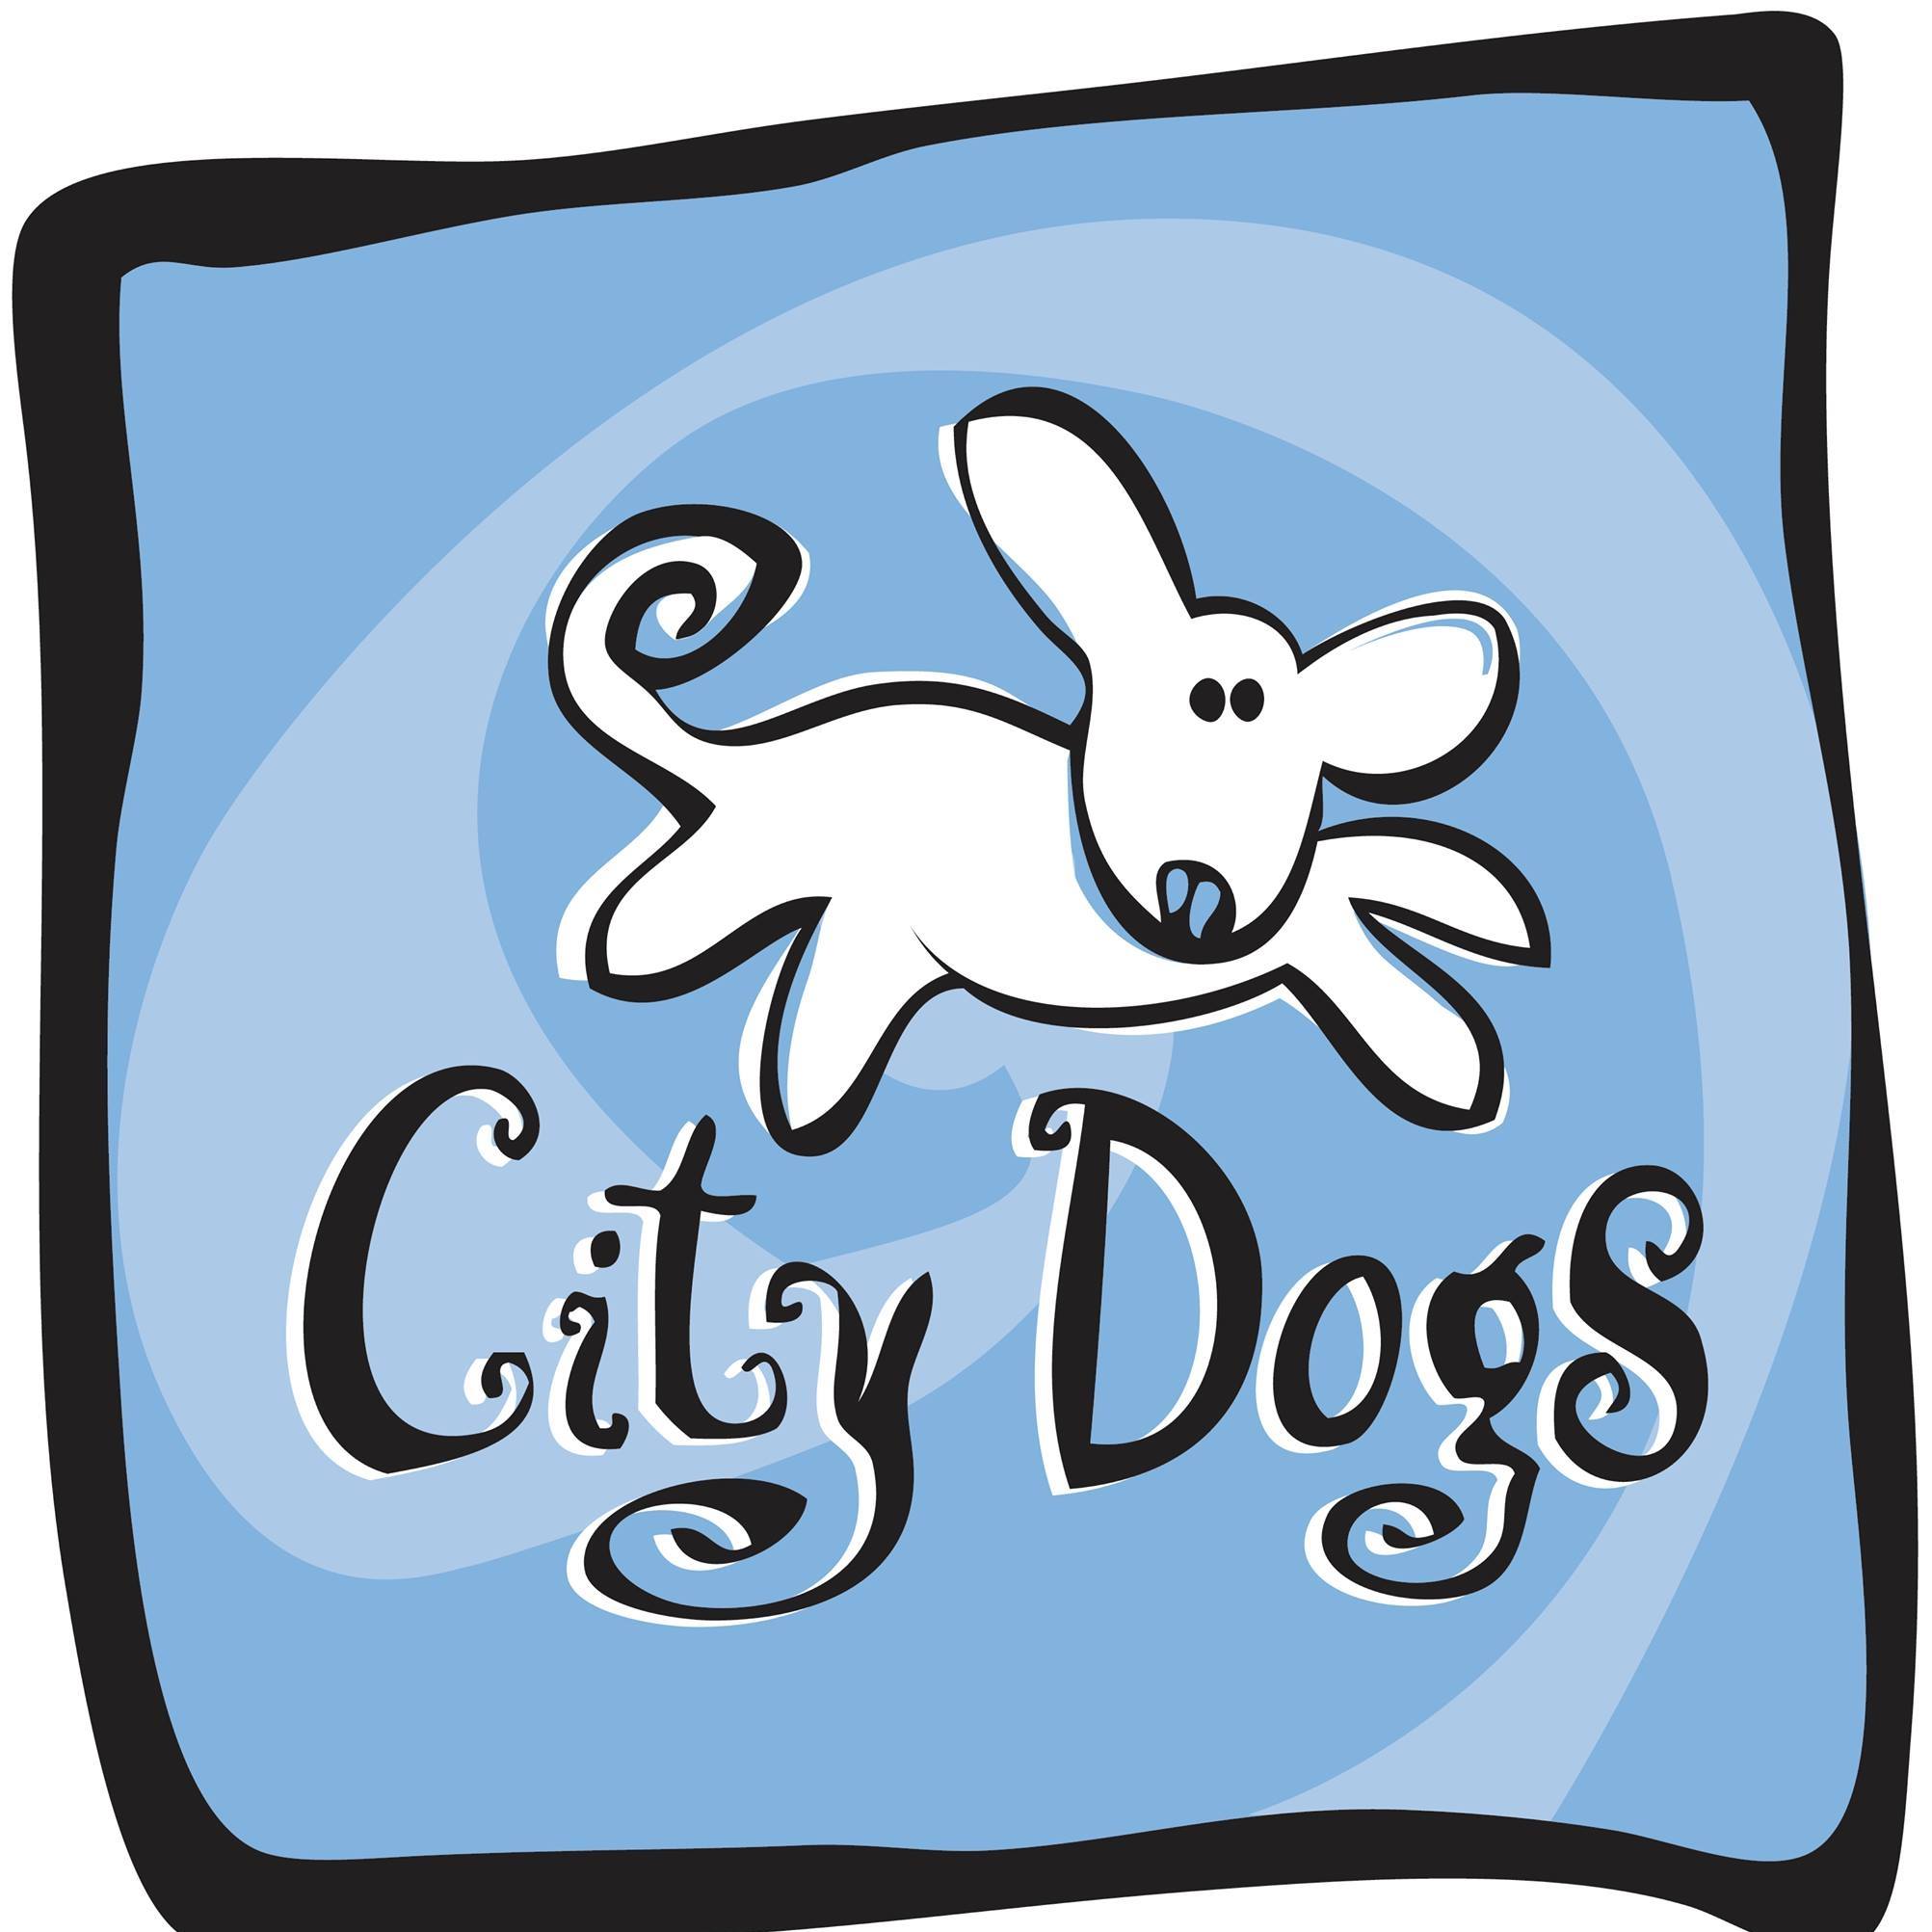 Company logo of City Dogs Daycare